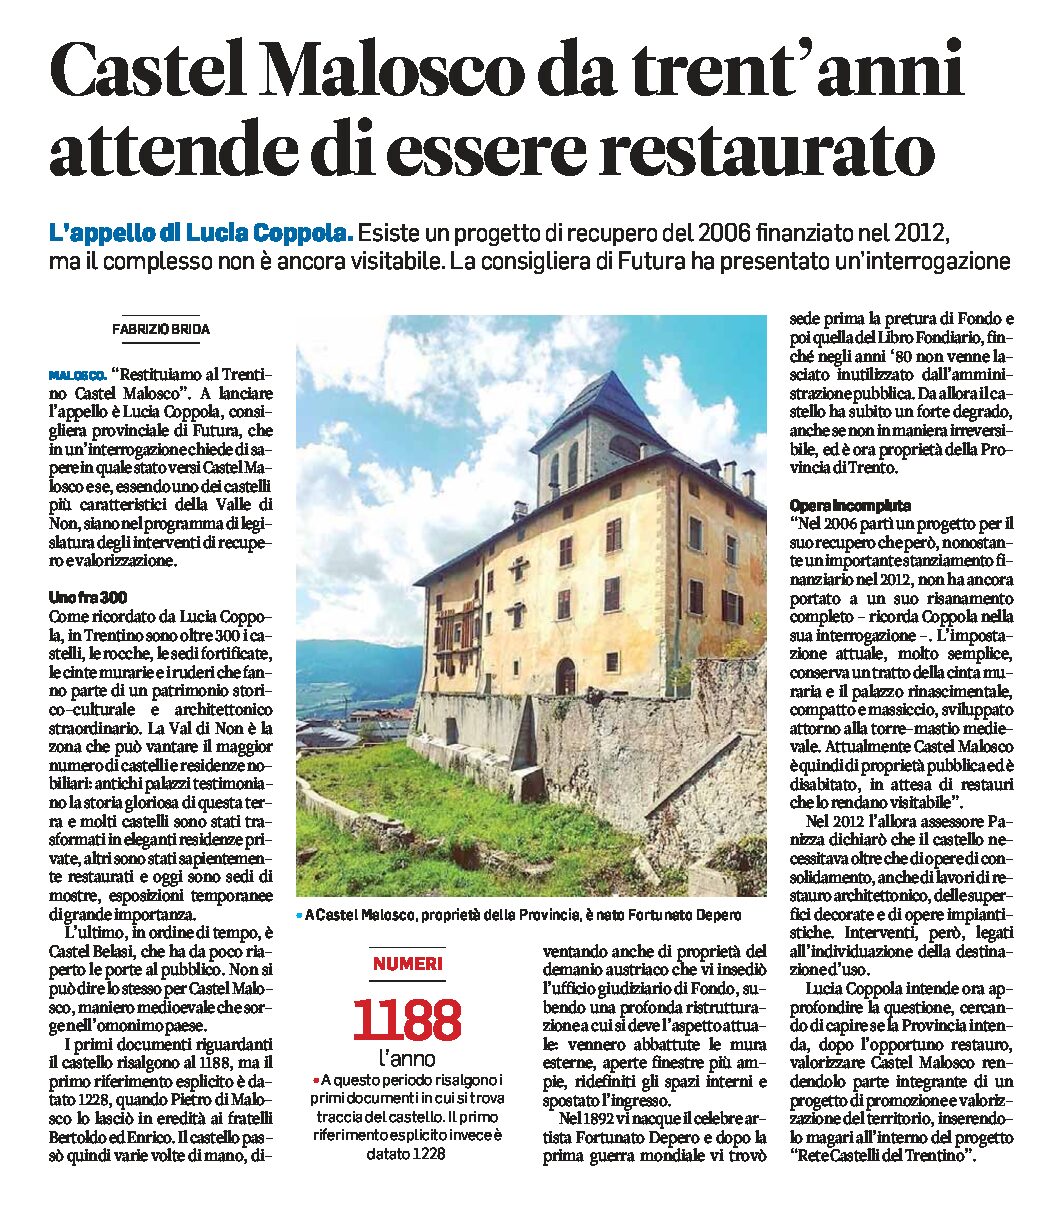 Castel Malosco: da 30 anni attende di essere restaurato. Appello di Lucia Coppola